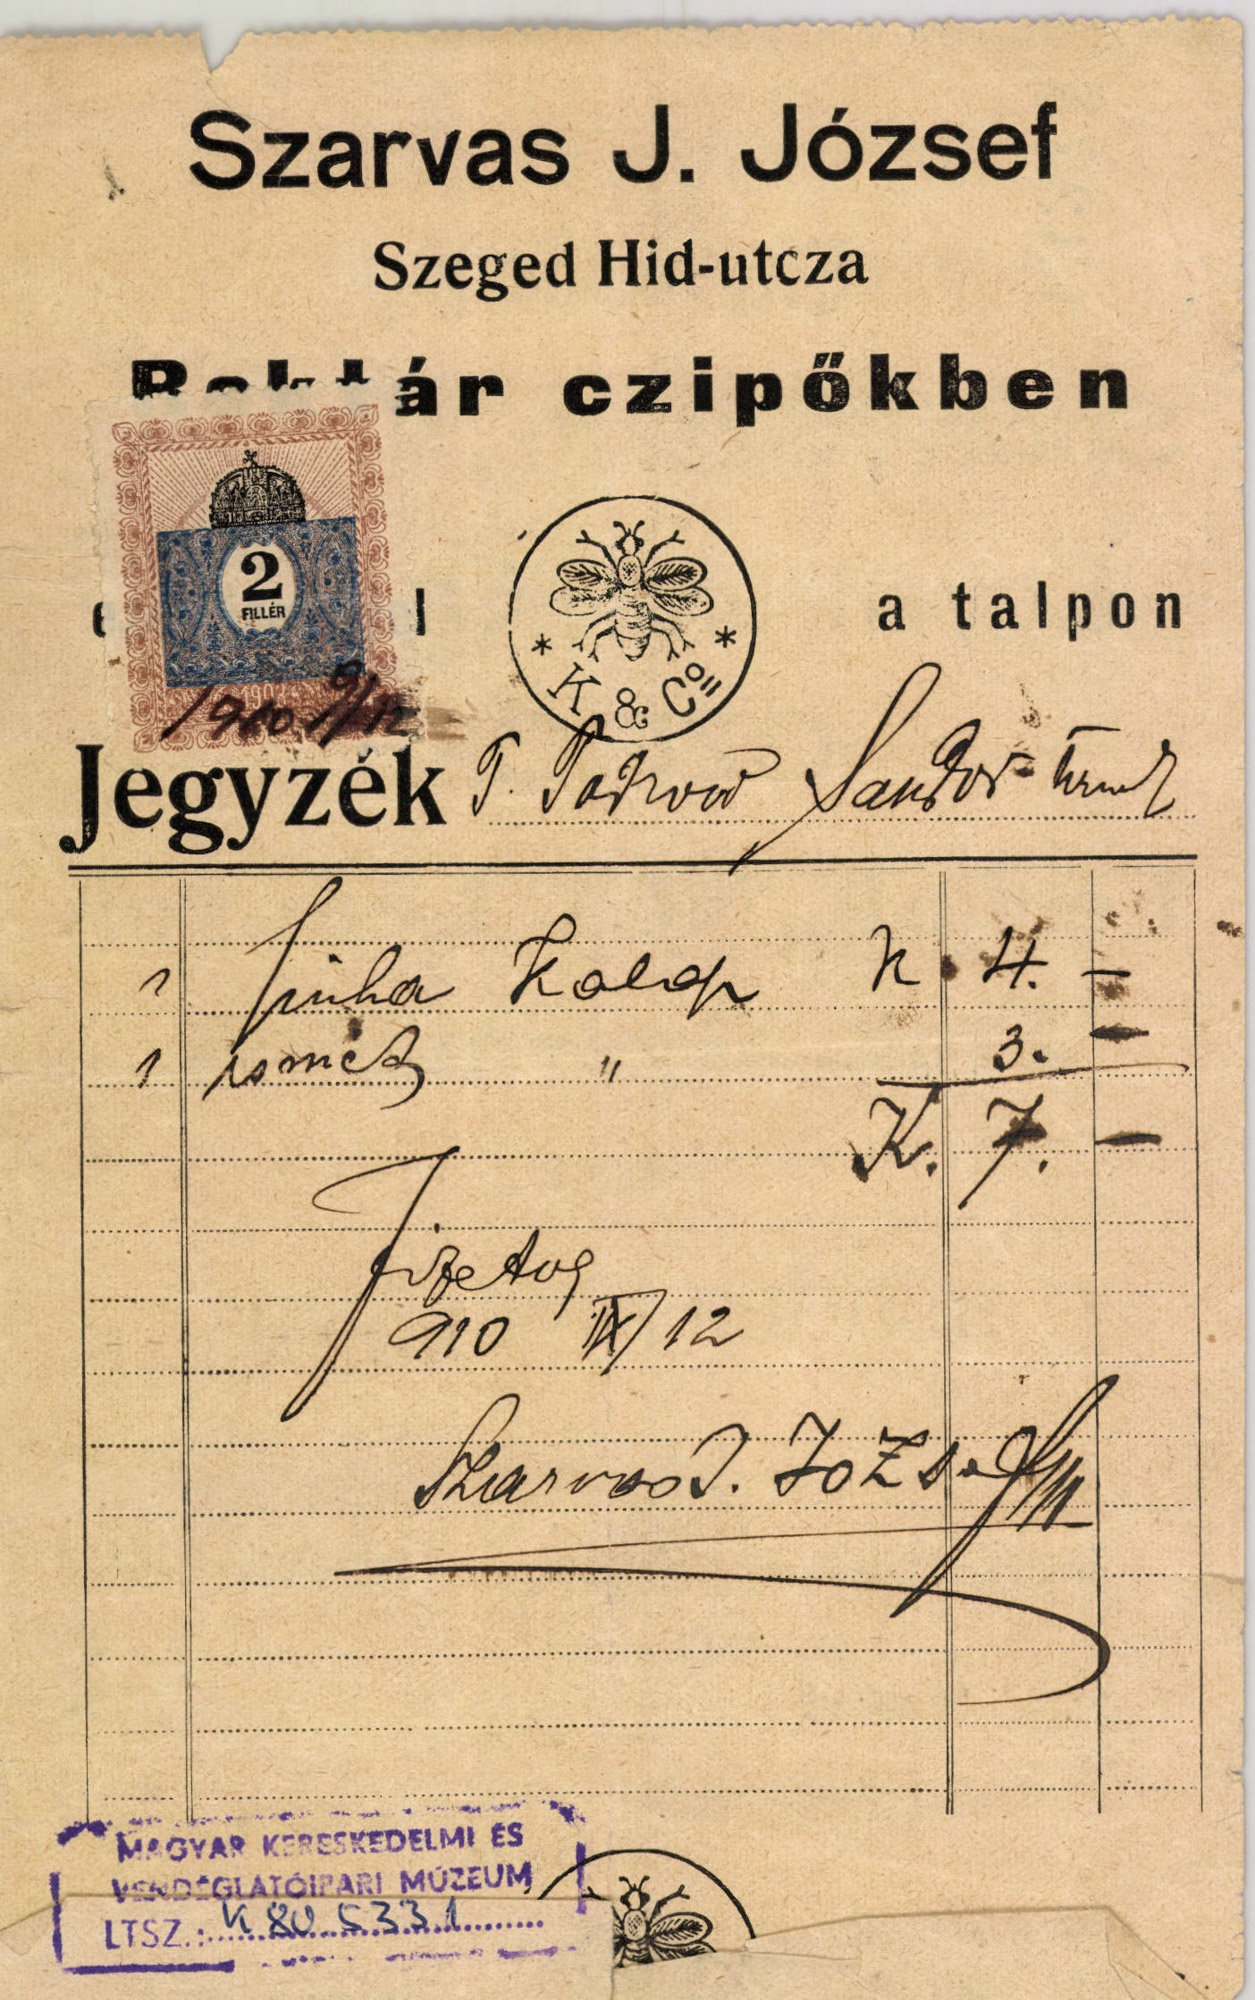 Szarvas J. József Raktár czipőkben (Magyar Kereskedelmi és Vendéglátóipari Múzeum CC BY-NC-SA)